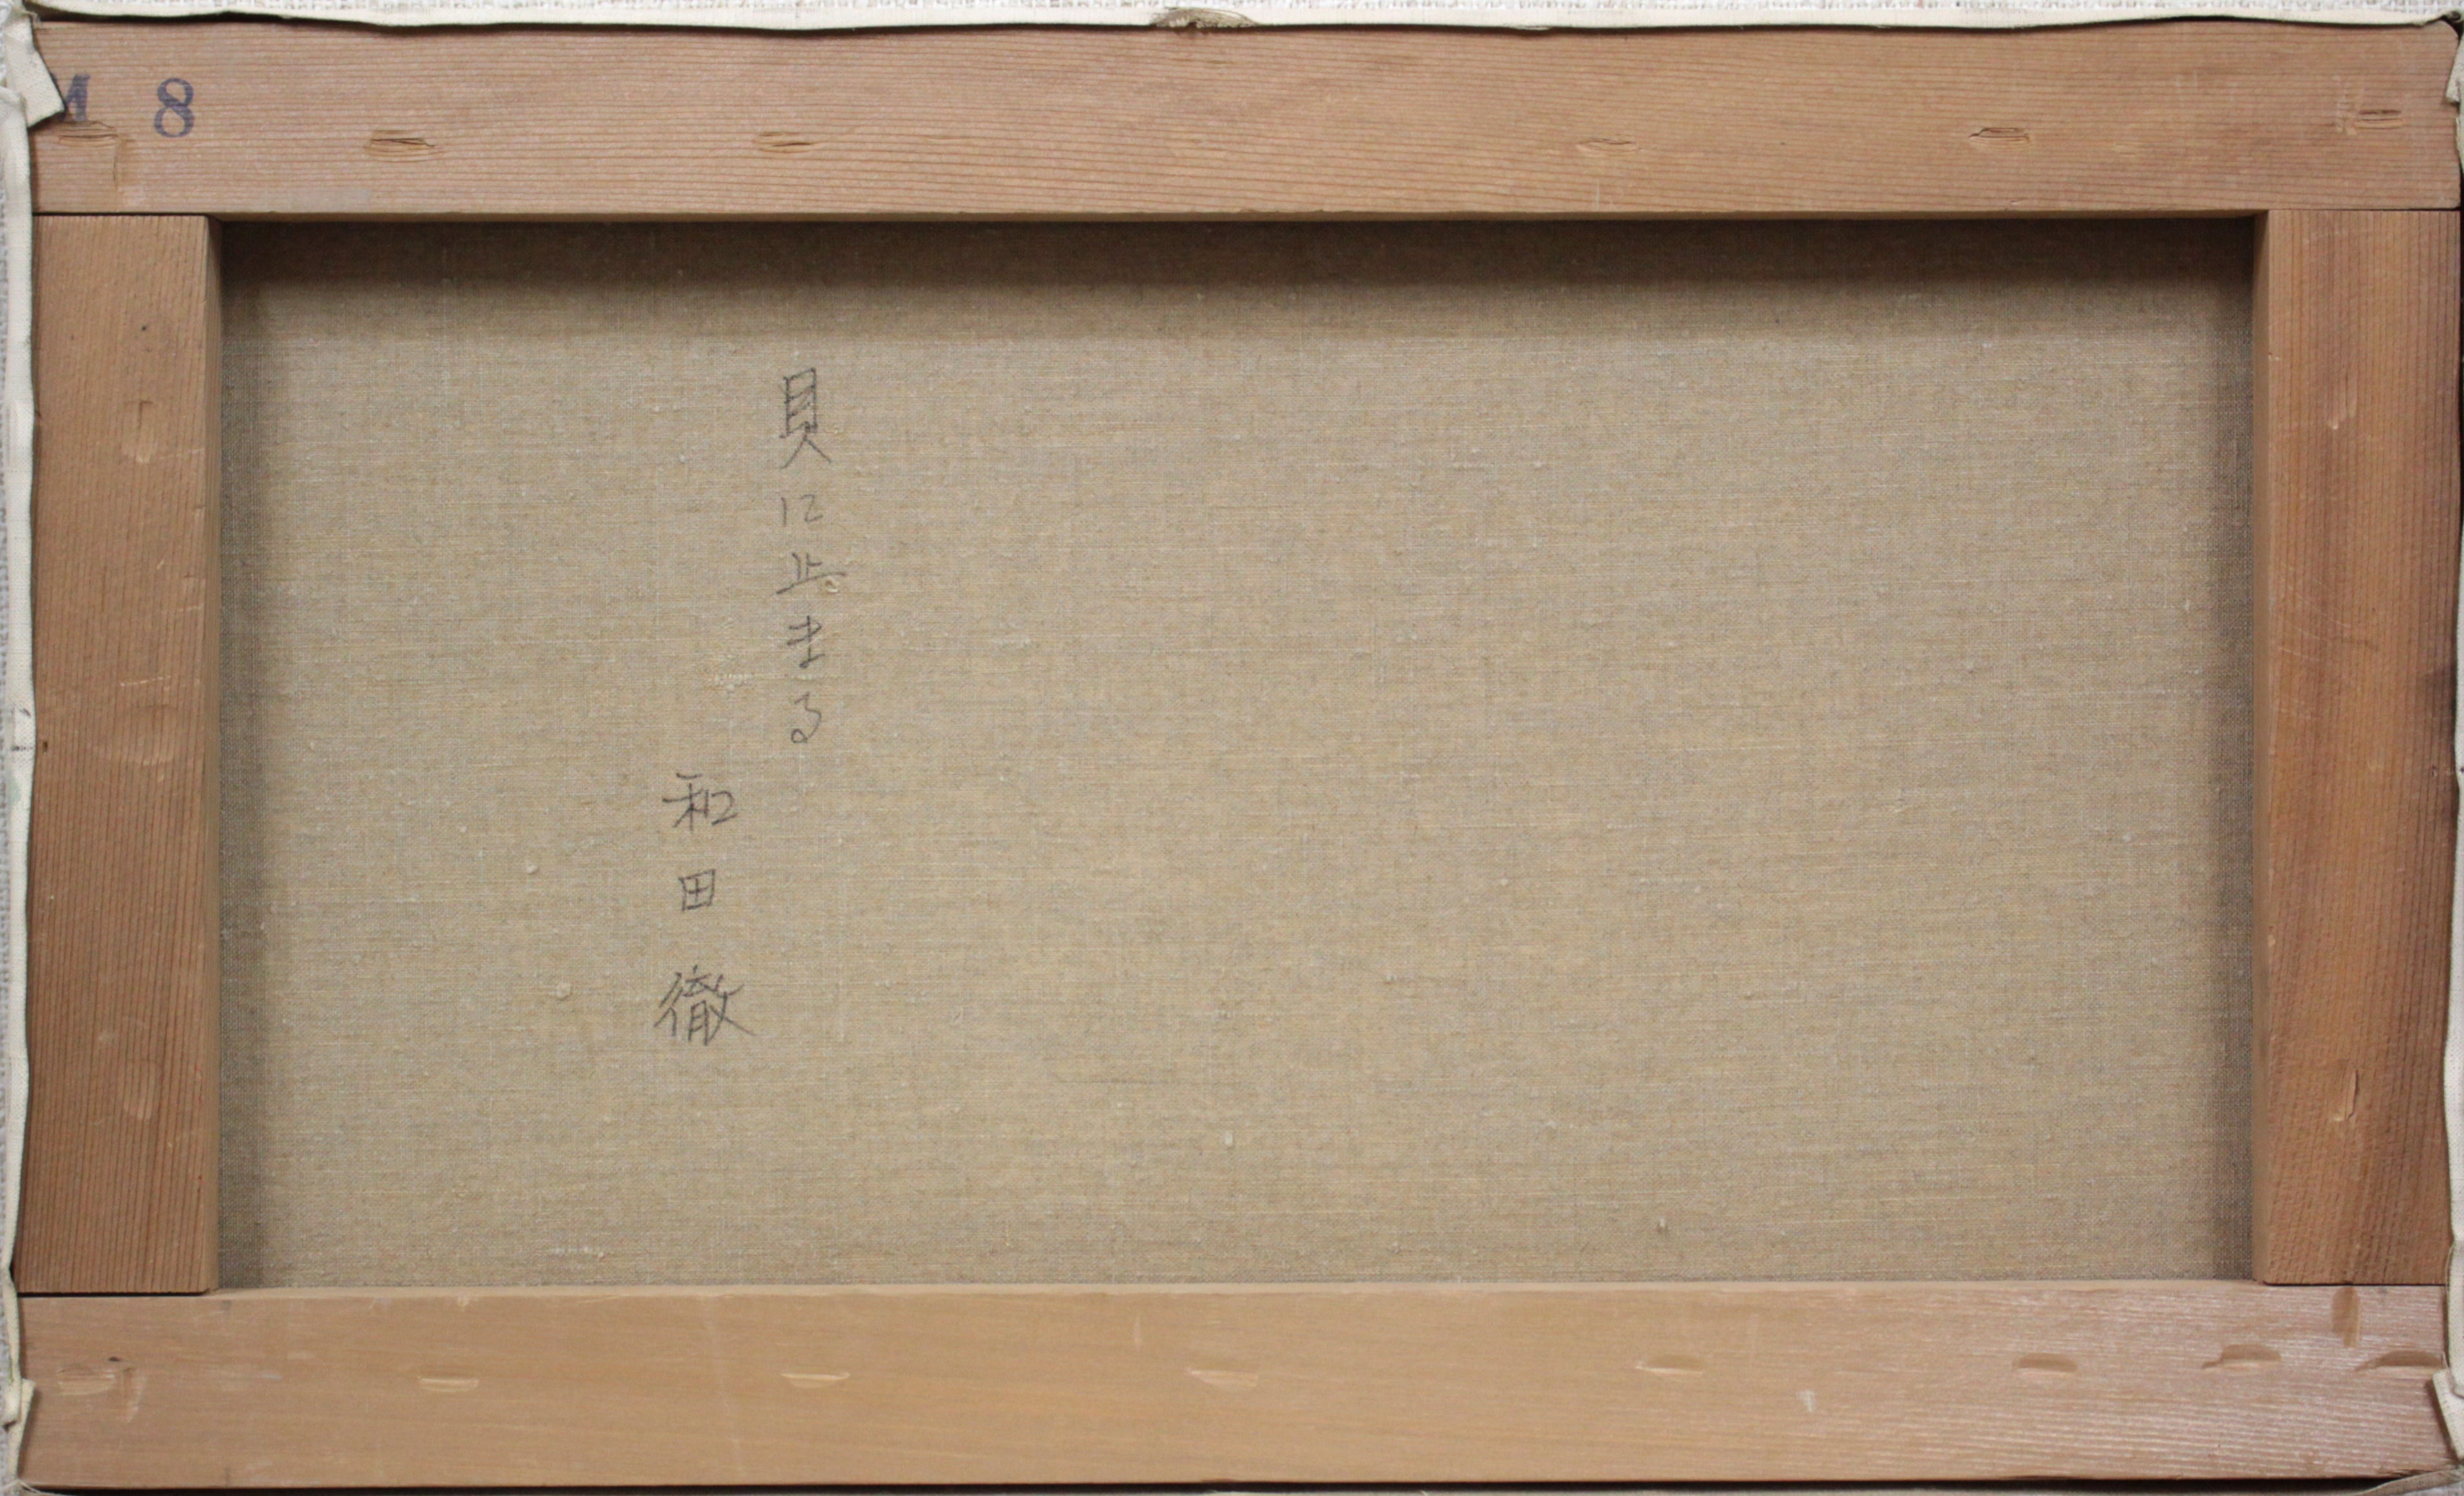 和田徹 ＷＡＤＡ 抽象画 線描油絵作品 １９８５ - 絵画/タペストリ